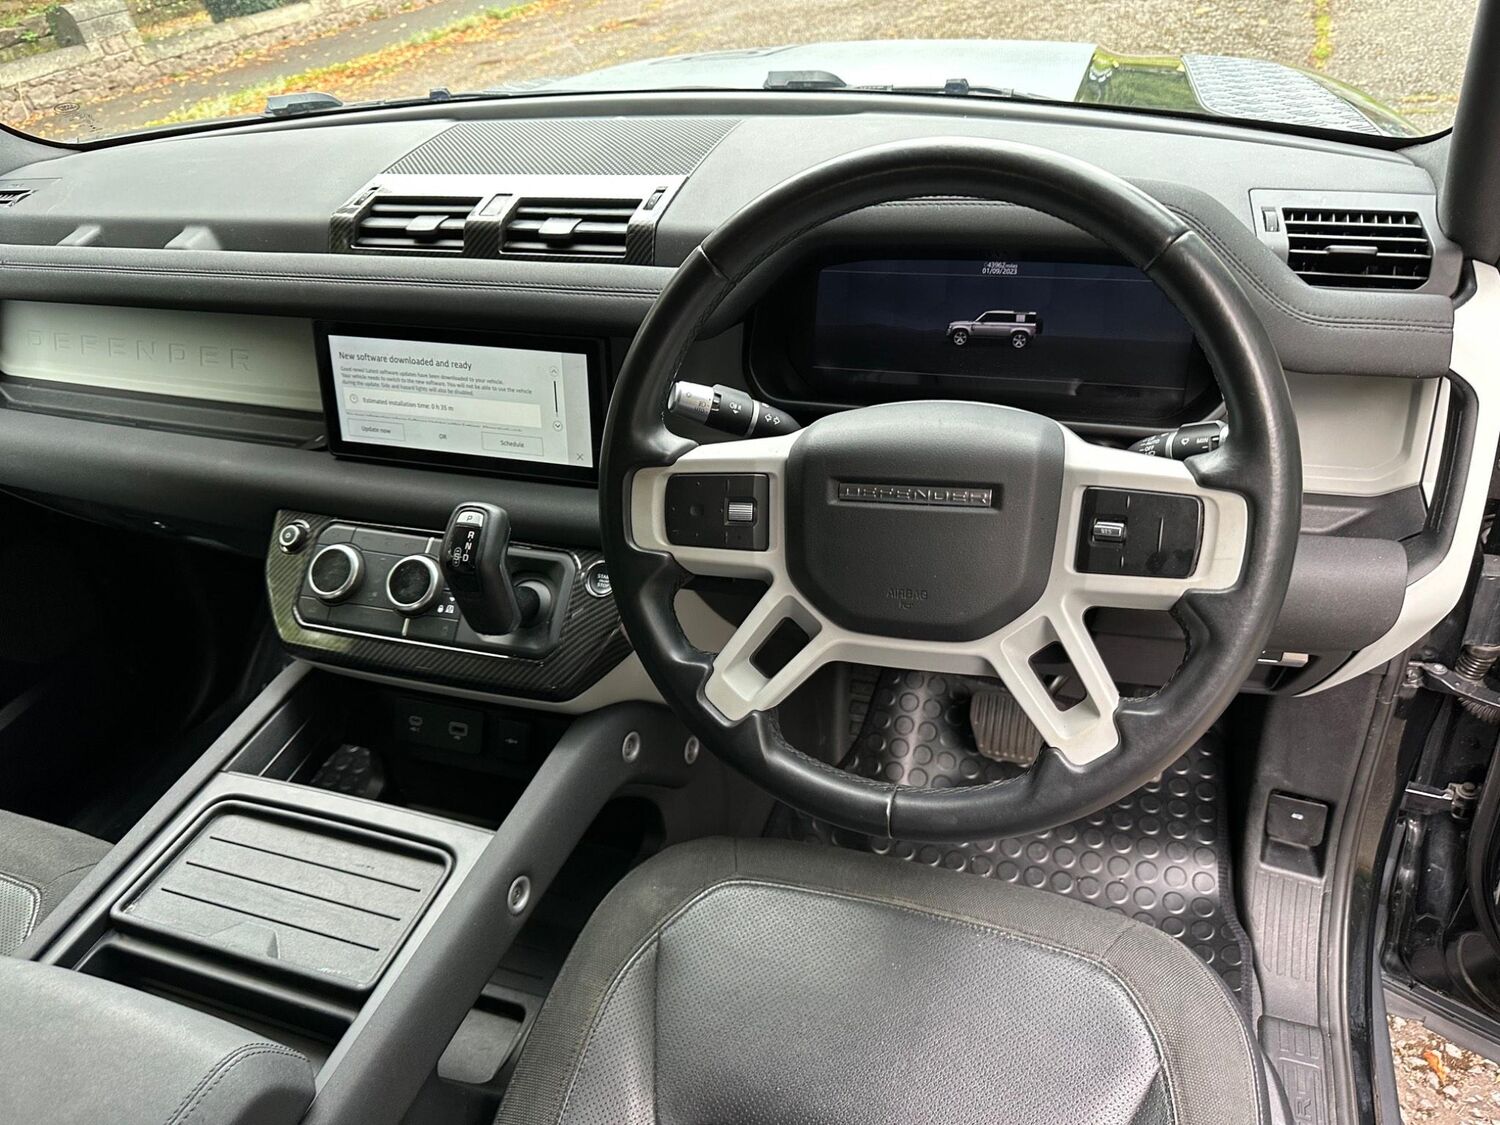 Land Rover 110